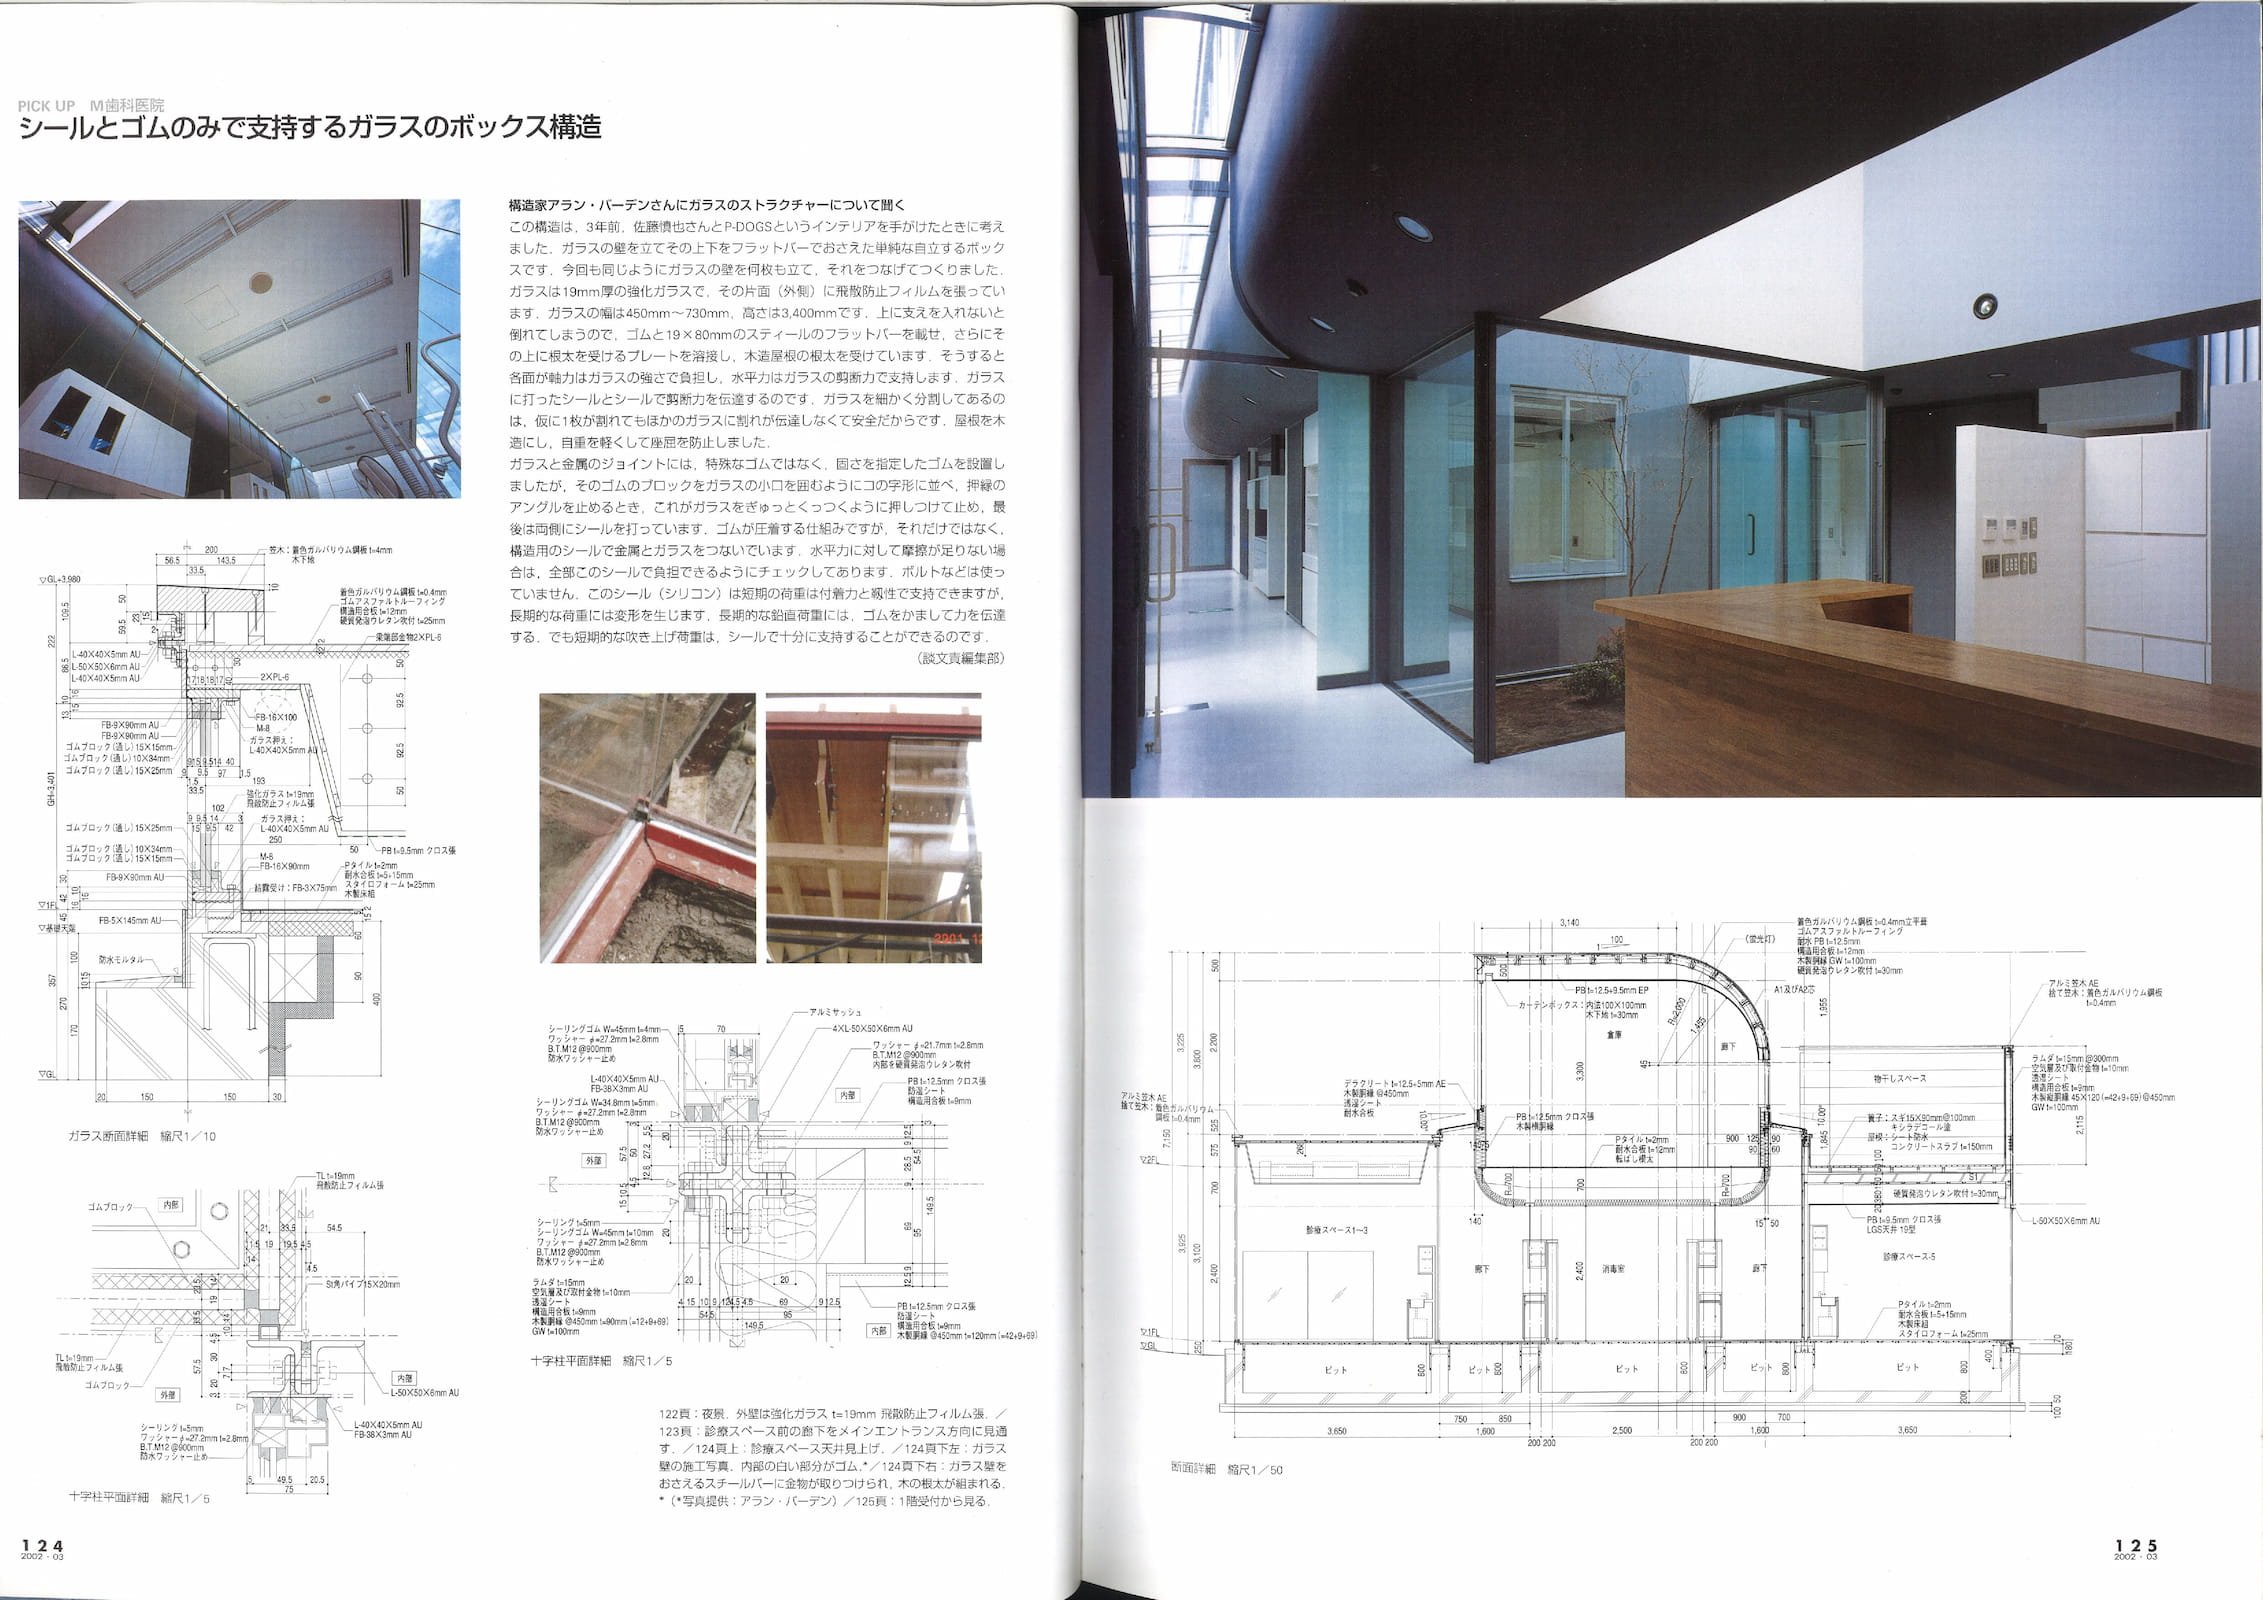 新建築 - New Architecture 2002-03_Page_3.jpg